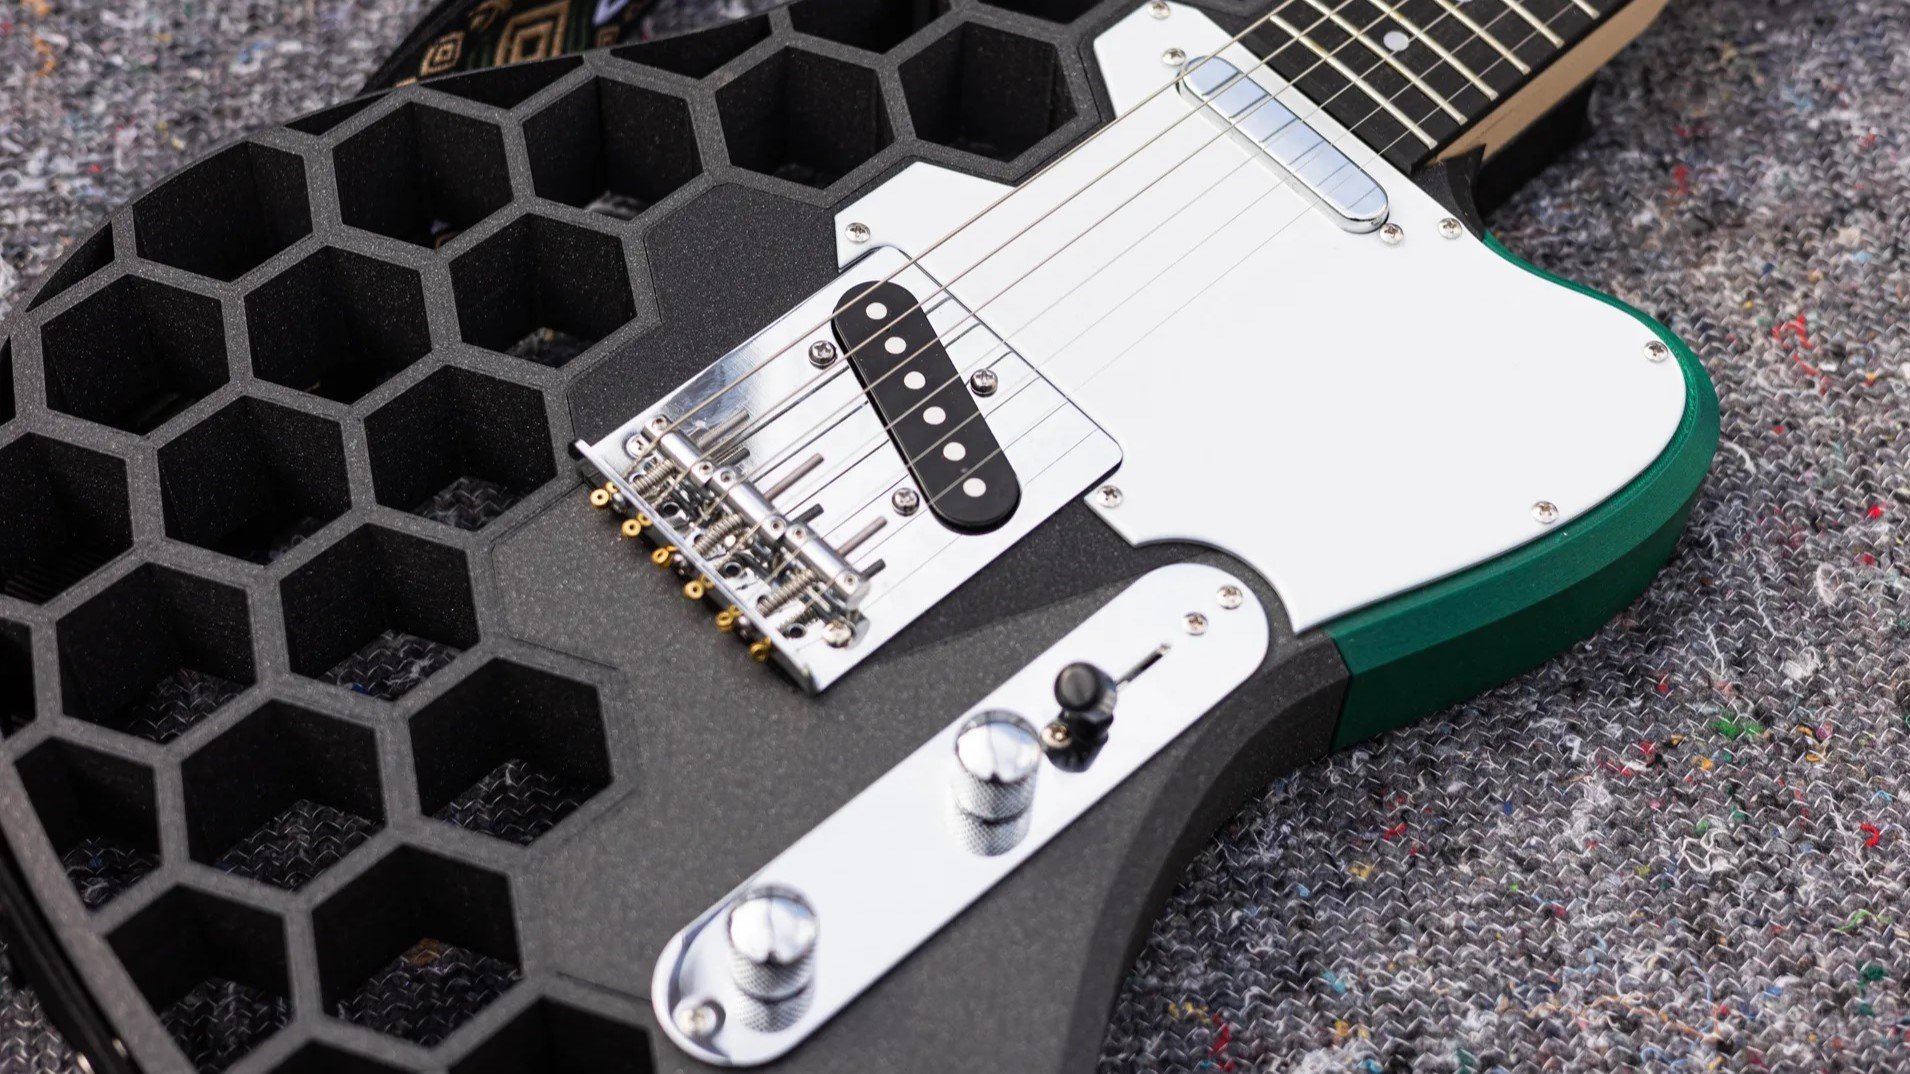 3D printed guitar accessories - Original Prusa 3D Printers